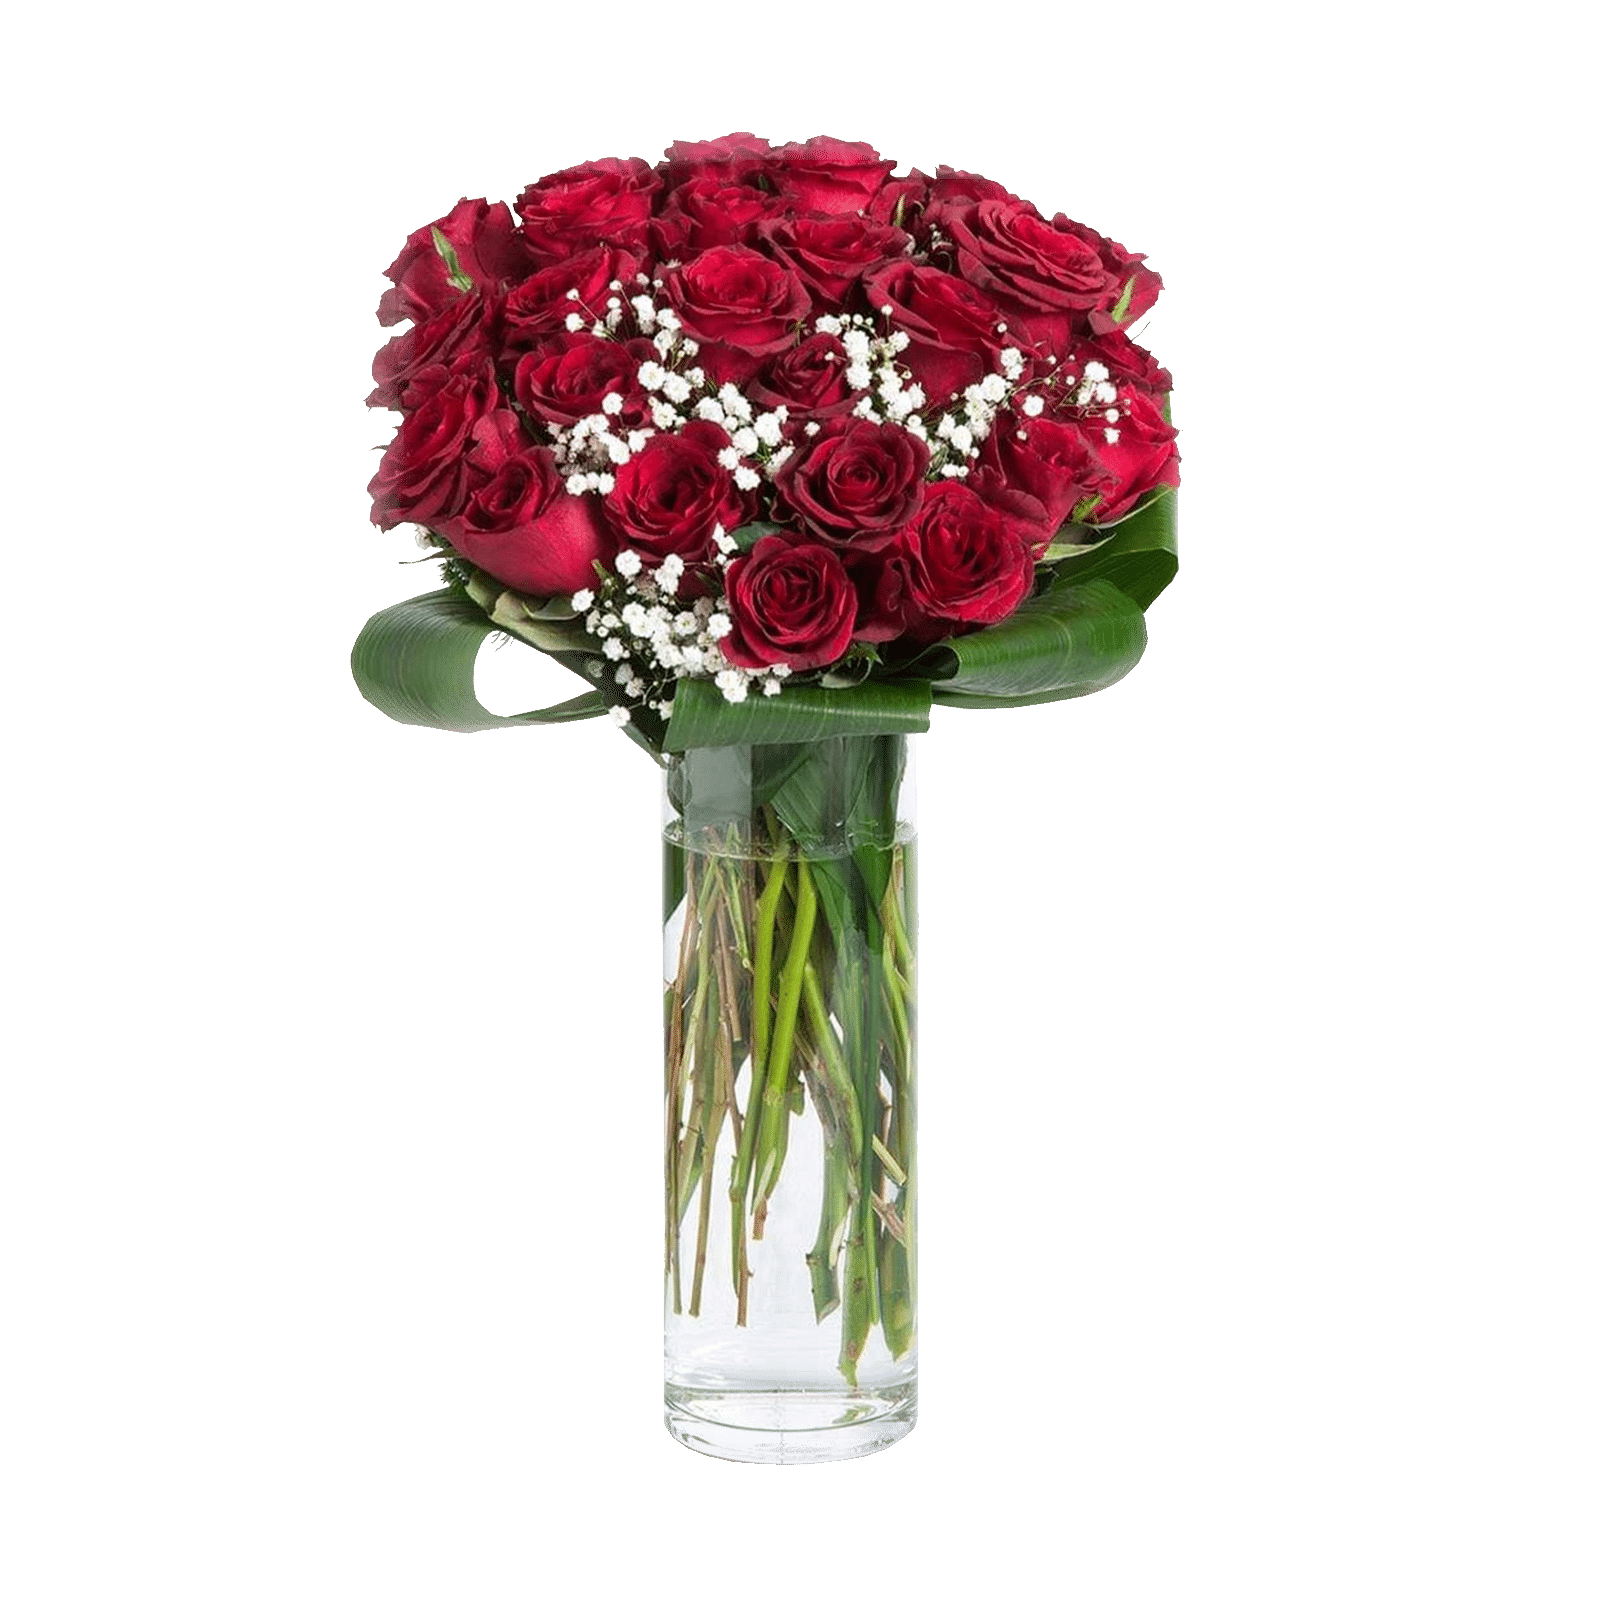 Consegna veloce in giornata a domicilio a Roma bouquet di 30 Rose rosse